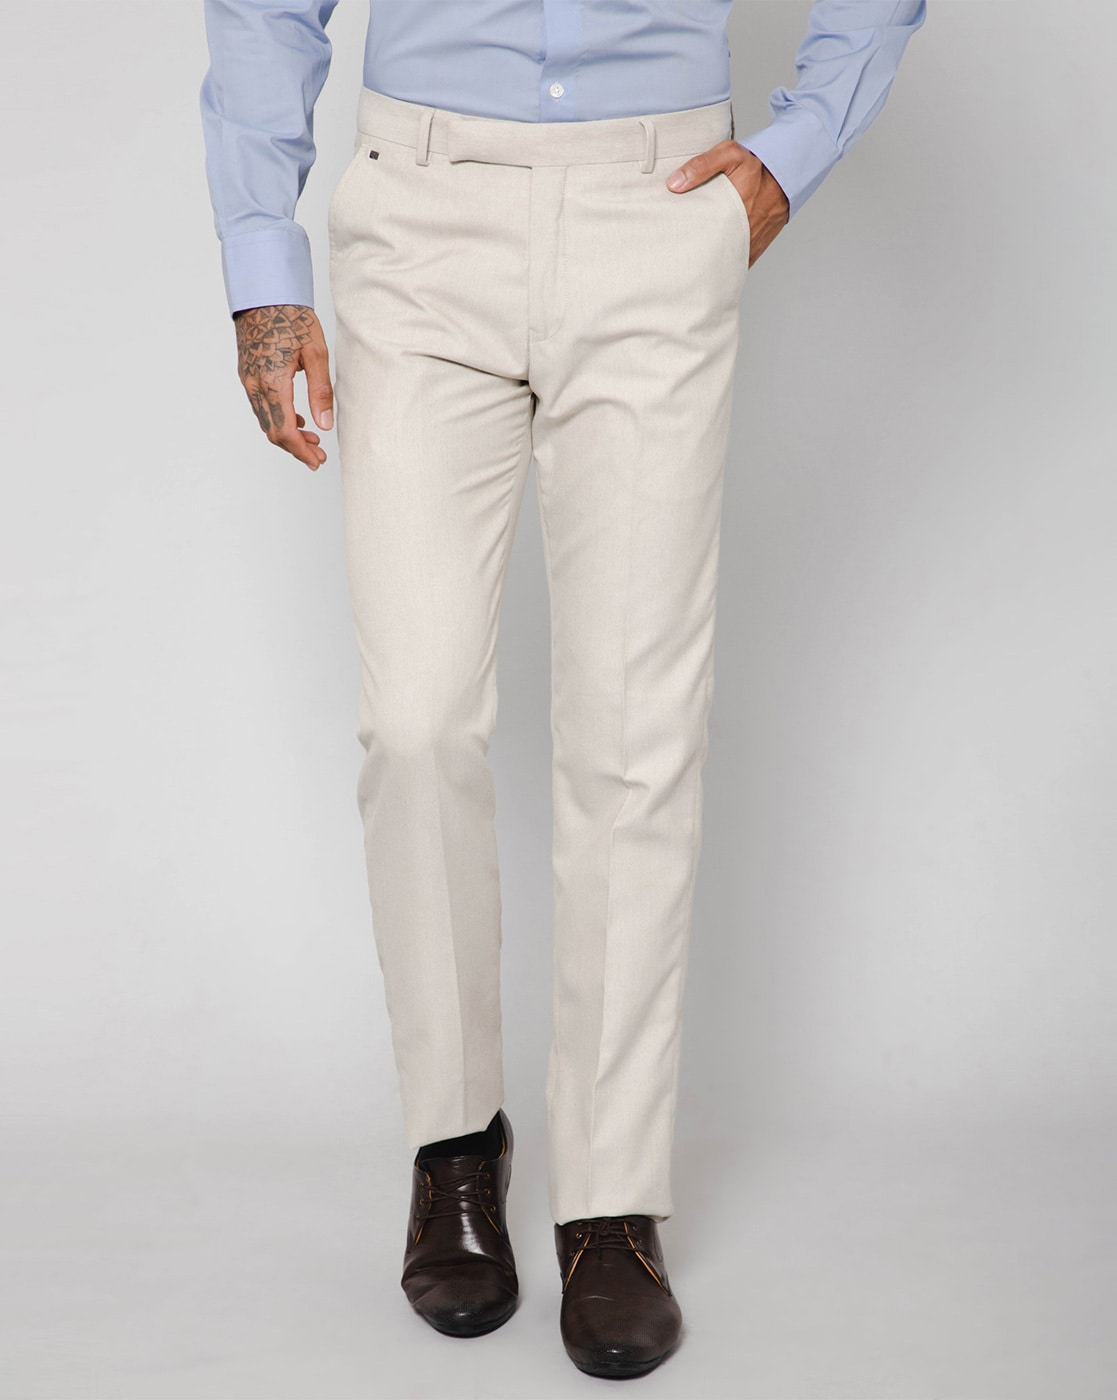 Slim fit beige pants-Men's beige trousers-Skinny beige pants|WAM DENIM